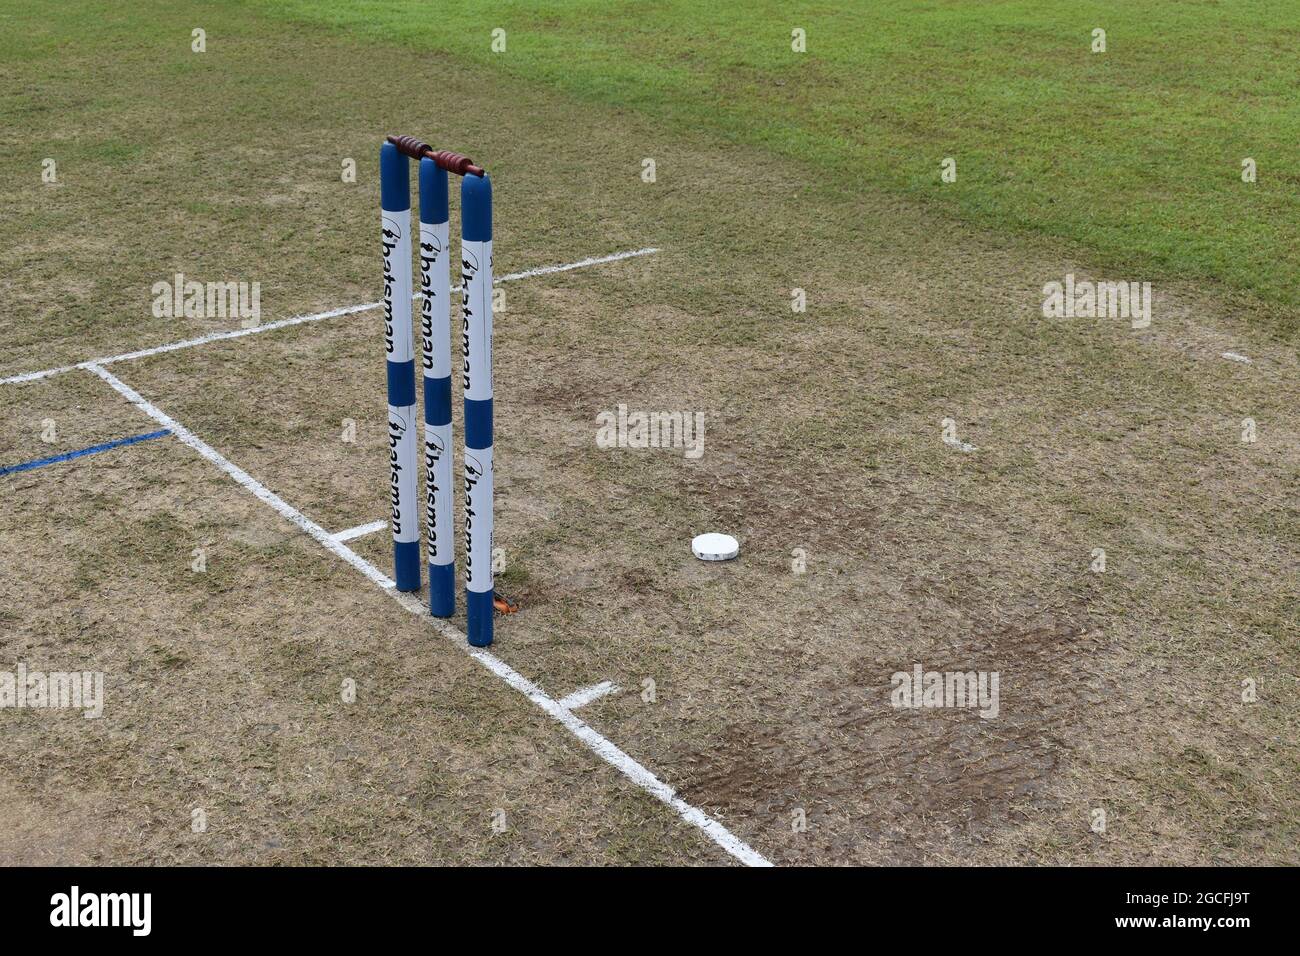 Bei einem Cricket-Spiel sind Sie bereit für das Spiel. Sri Lanka. Stockfoto